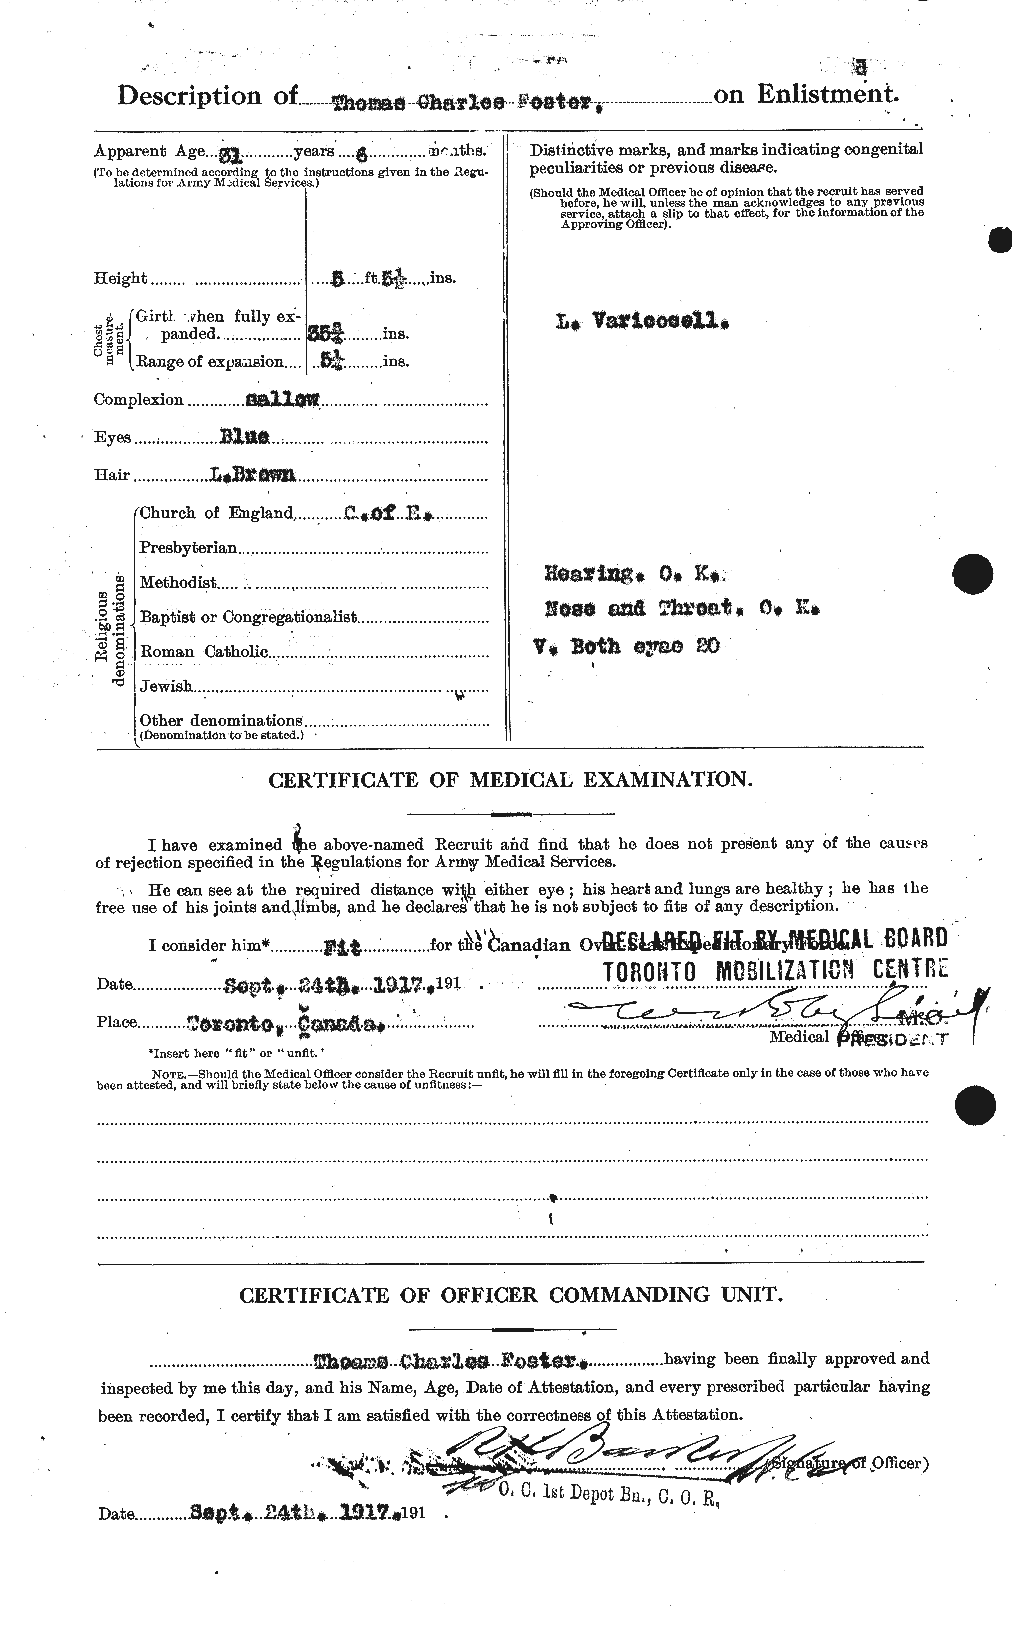 Dossiers du Personnel de la Première Guerre mondiale - CEC 335227b